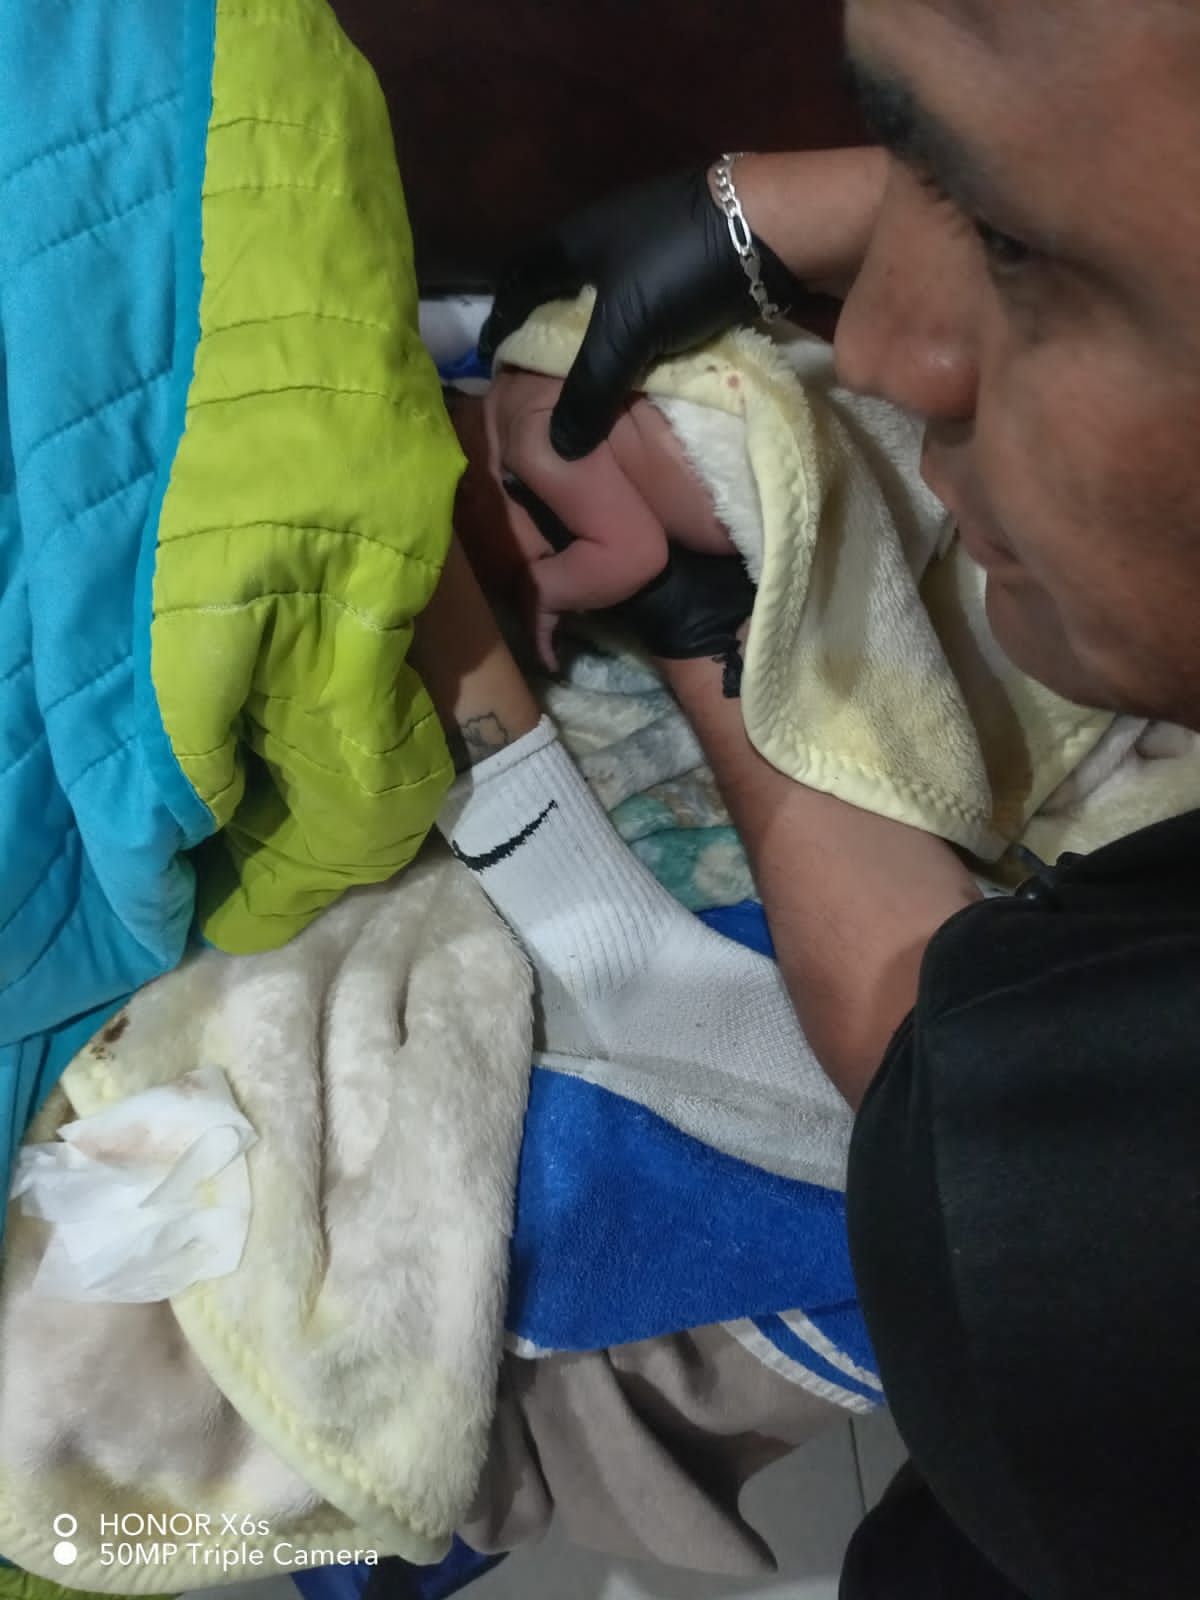 Madre da a luz en el sofá de su domicilio en Texcoco  la trasladan junto con su hija al hospital 197 del IMSS